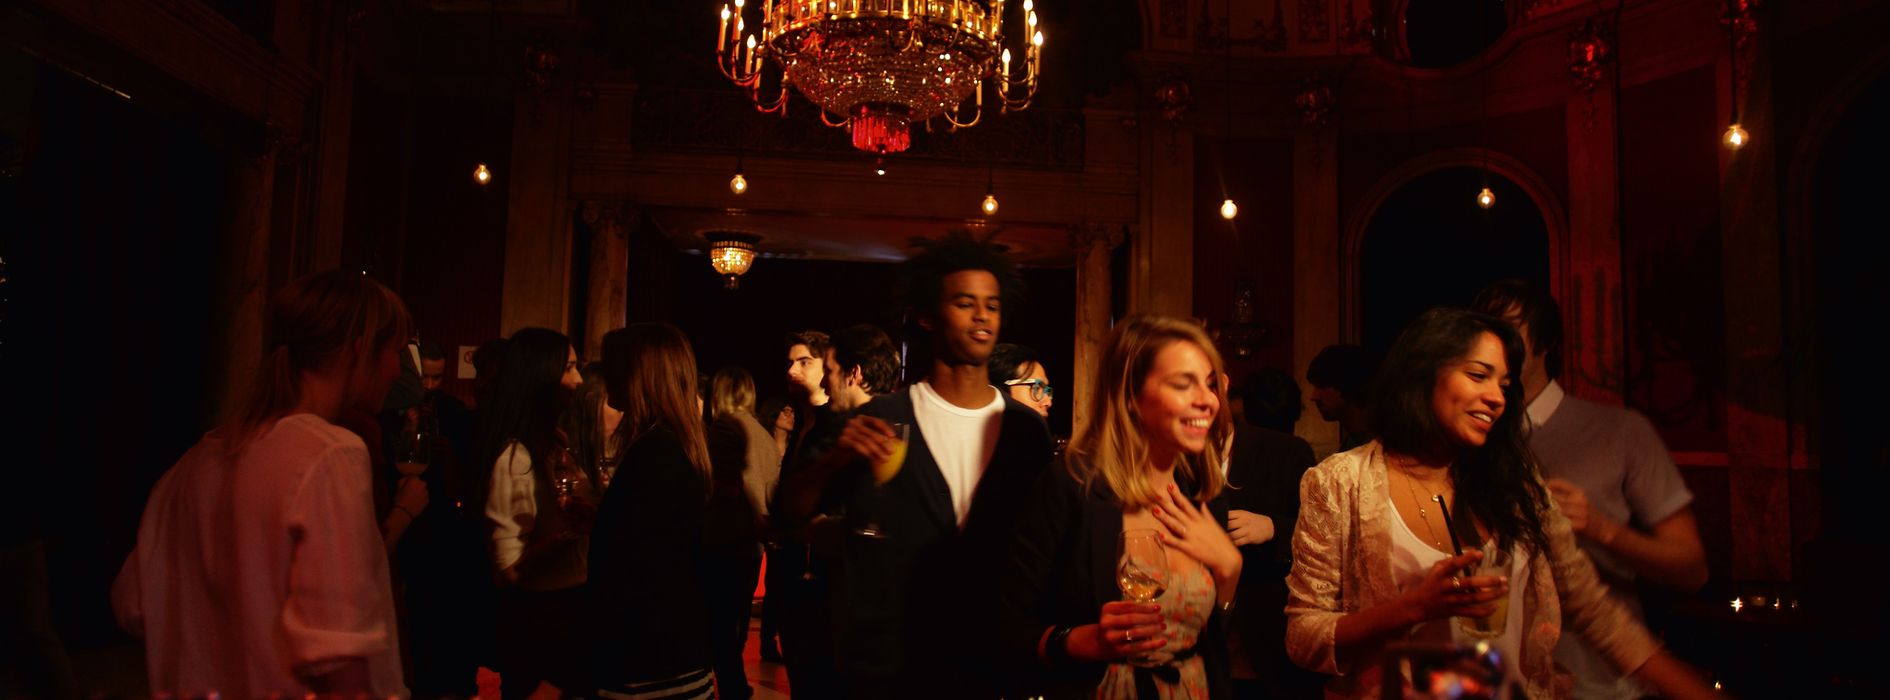 Oamenii dansează în barul roşu din Volkstheater